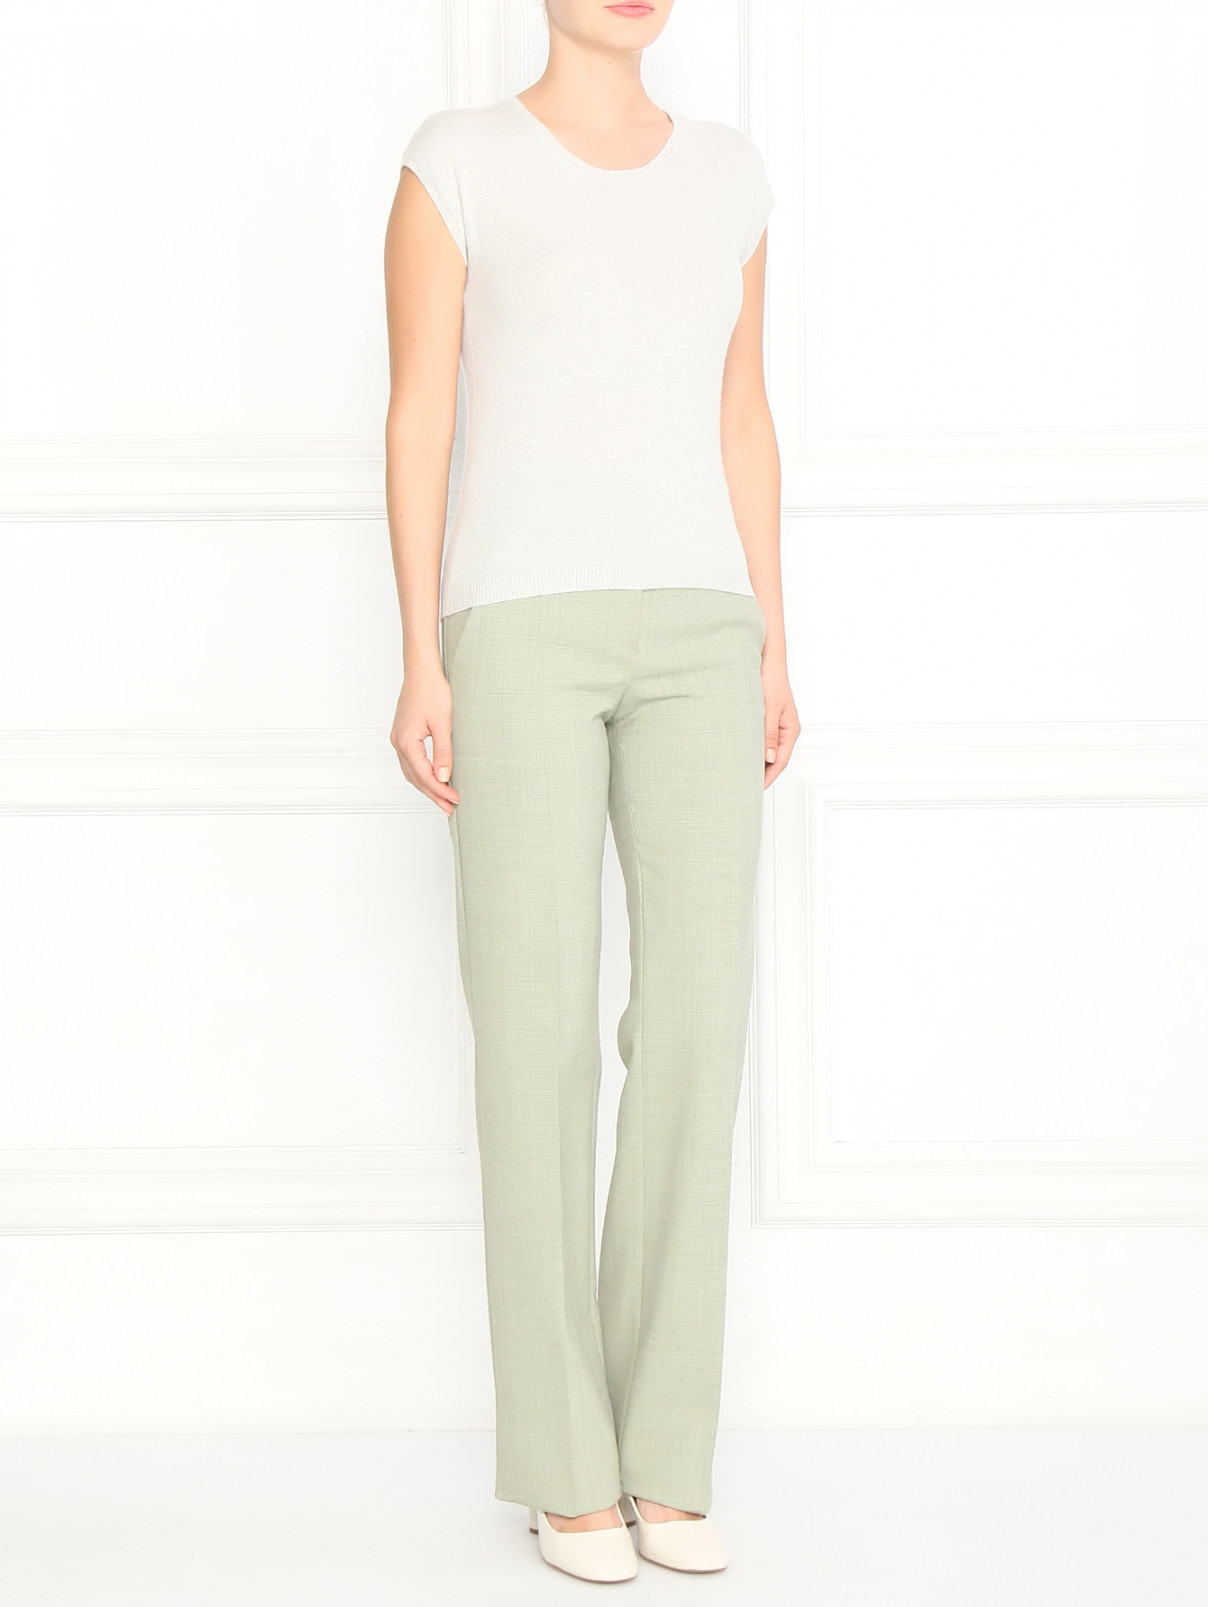 Прямые брюки из шерсти со стрелками Emporio Armani  –  Модель Общий вид  – Цвет:  Зеленый